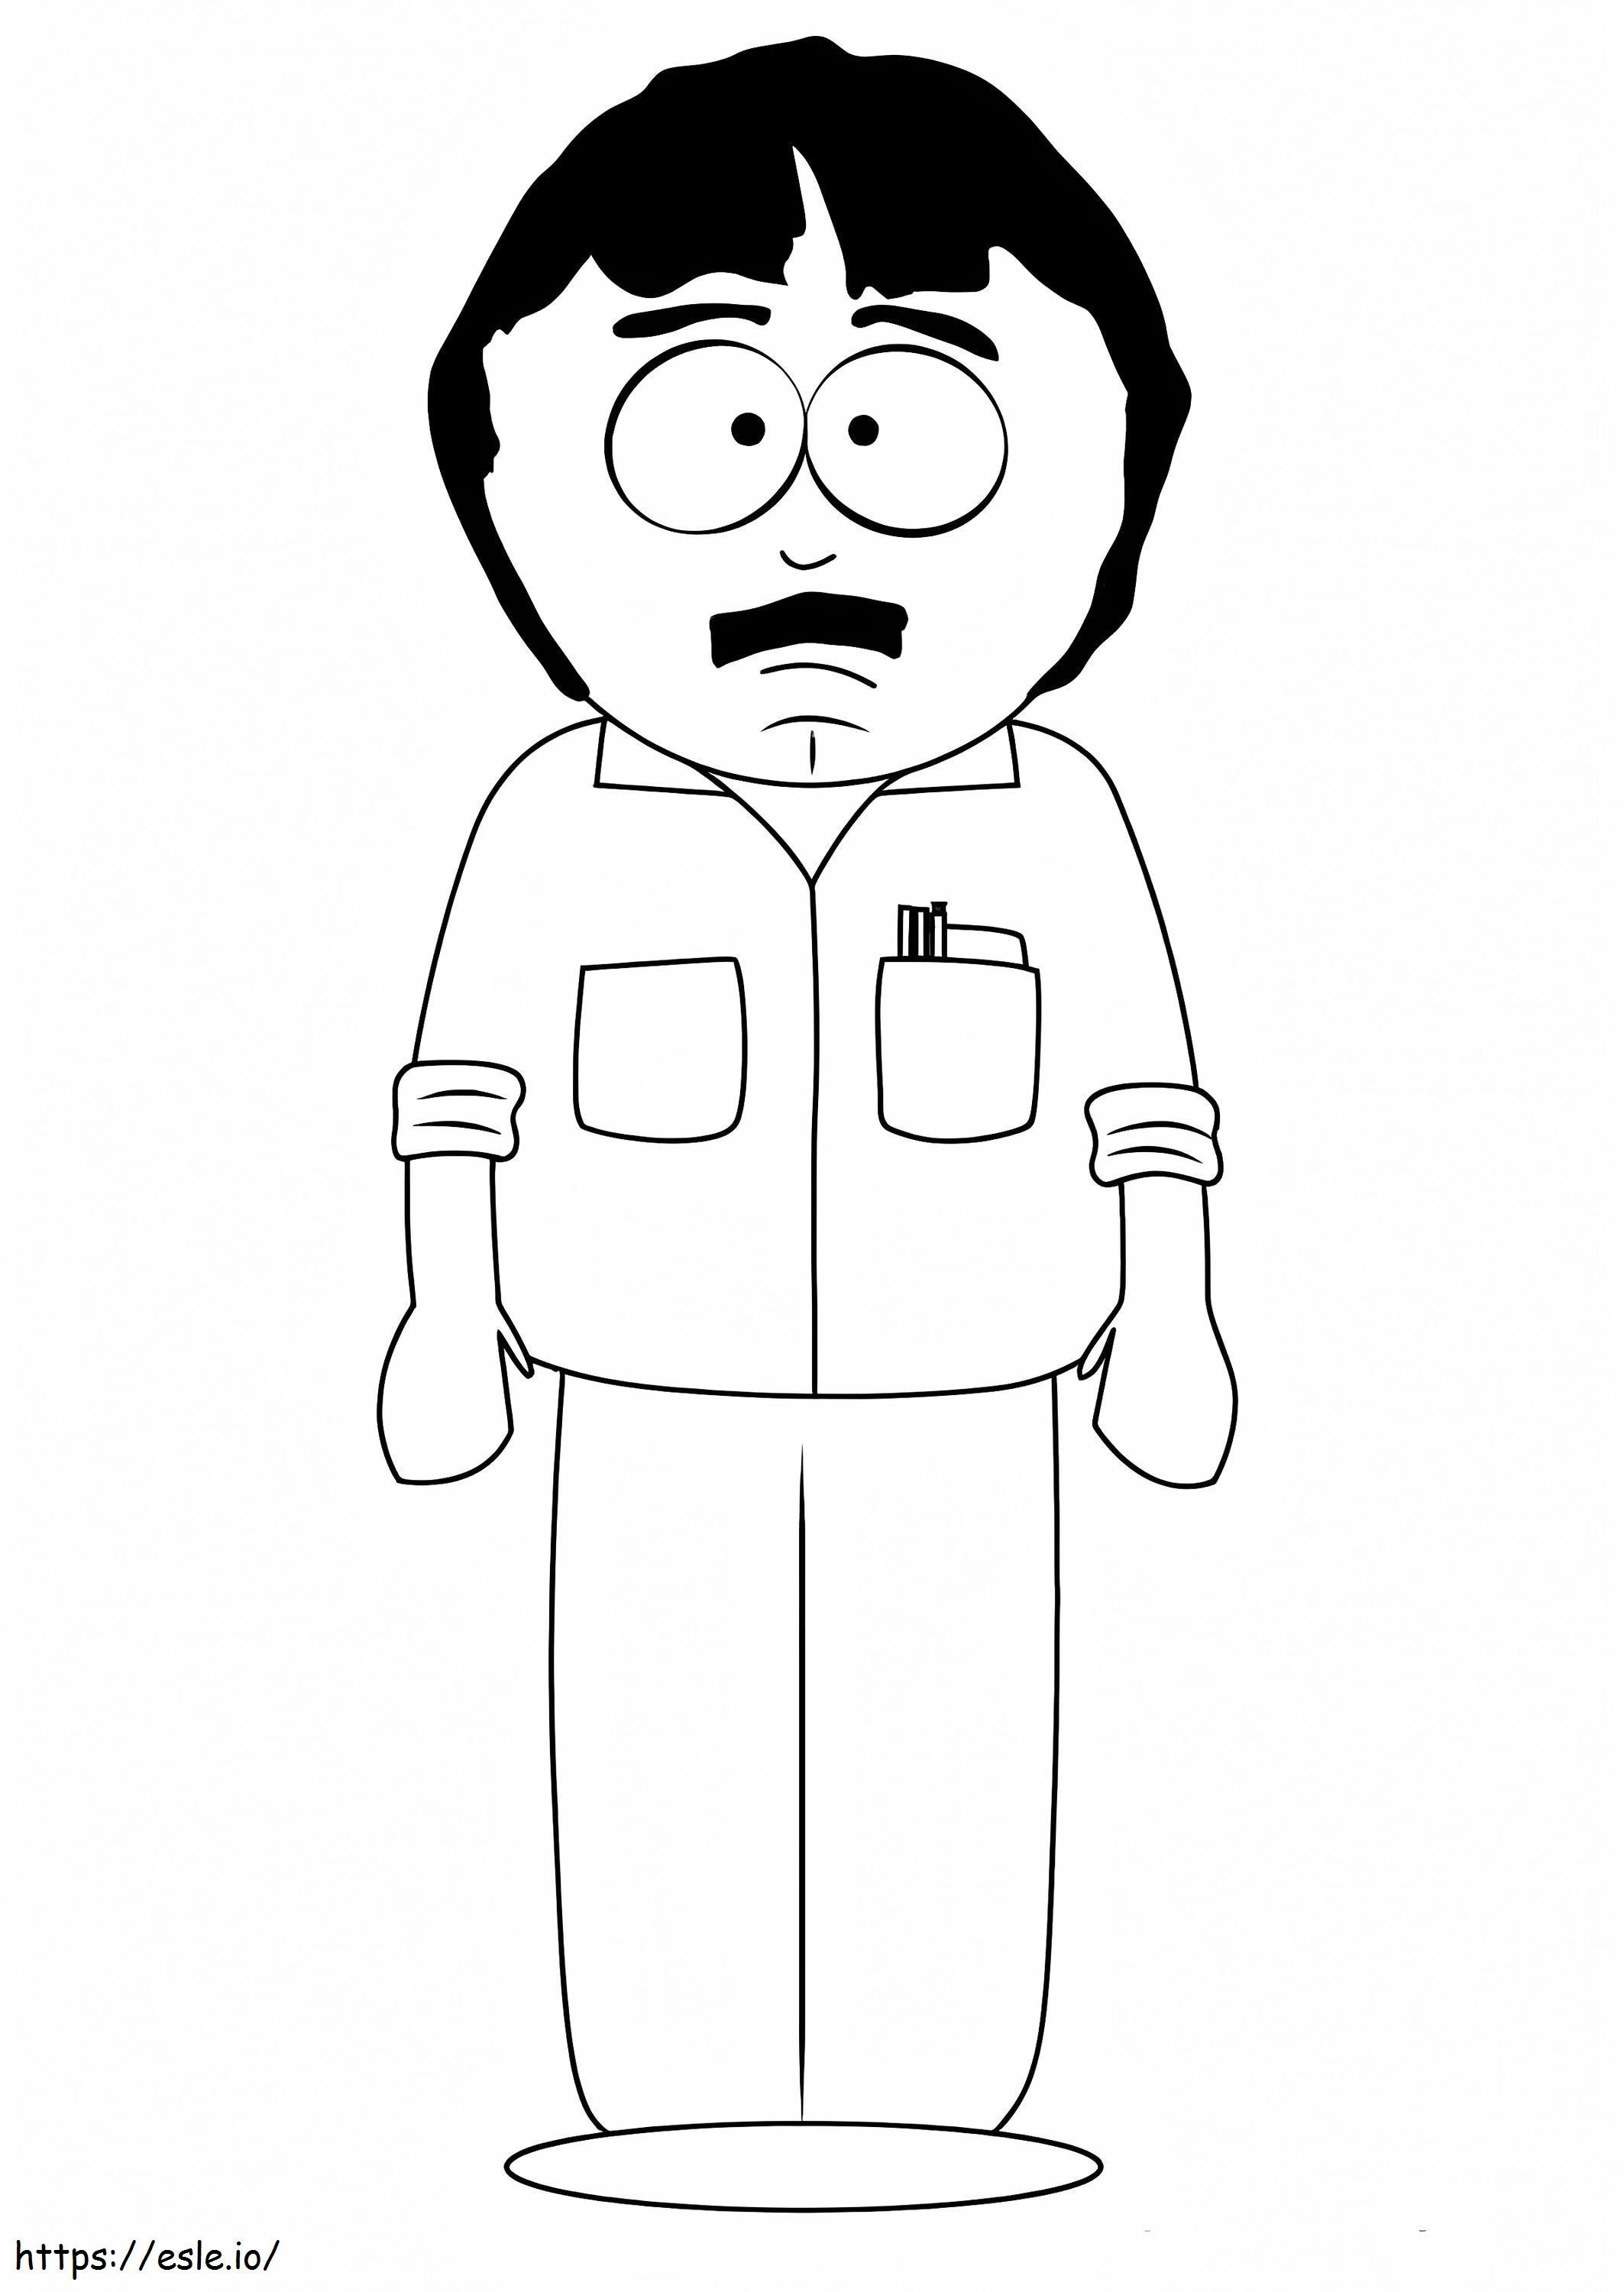 Coloriage Randy Marsh De South Park à imprimer dessin